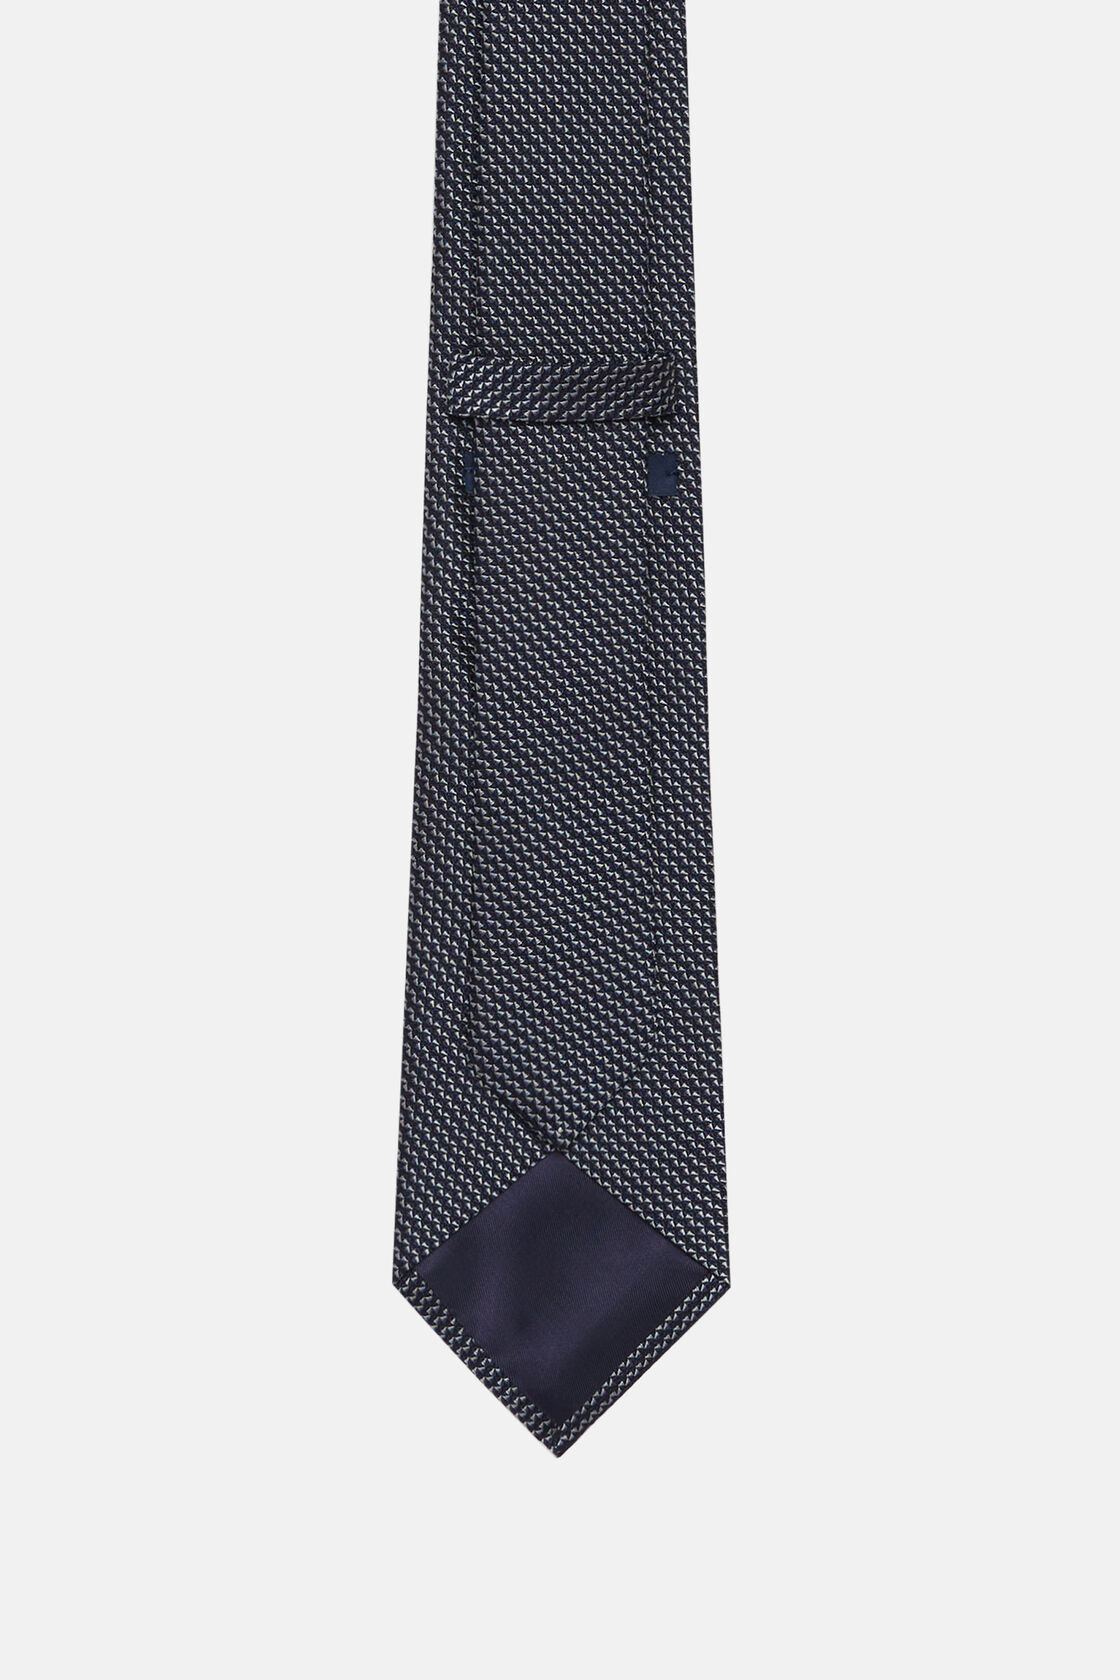 Μεταξωτή επίσημη γραβάτα, Navy blue, hi-res